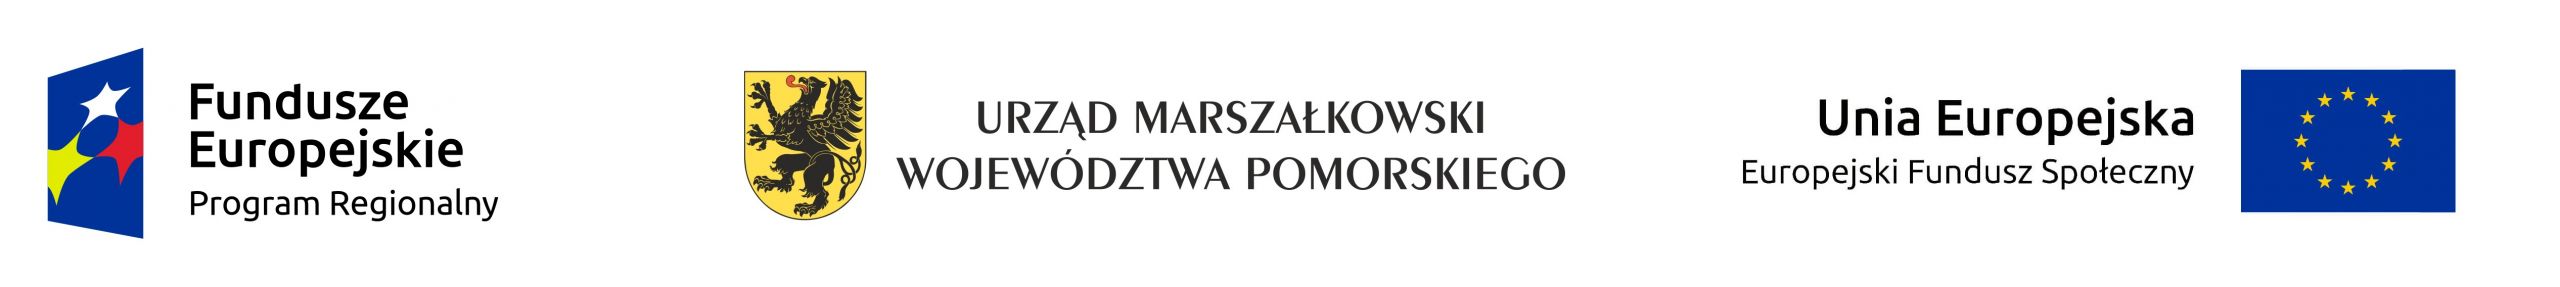 Logo Fundusze Europejskie Urząd Marszałkowski Unia Europejska